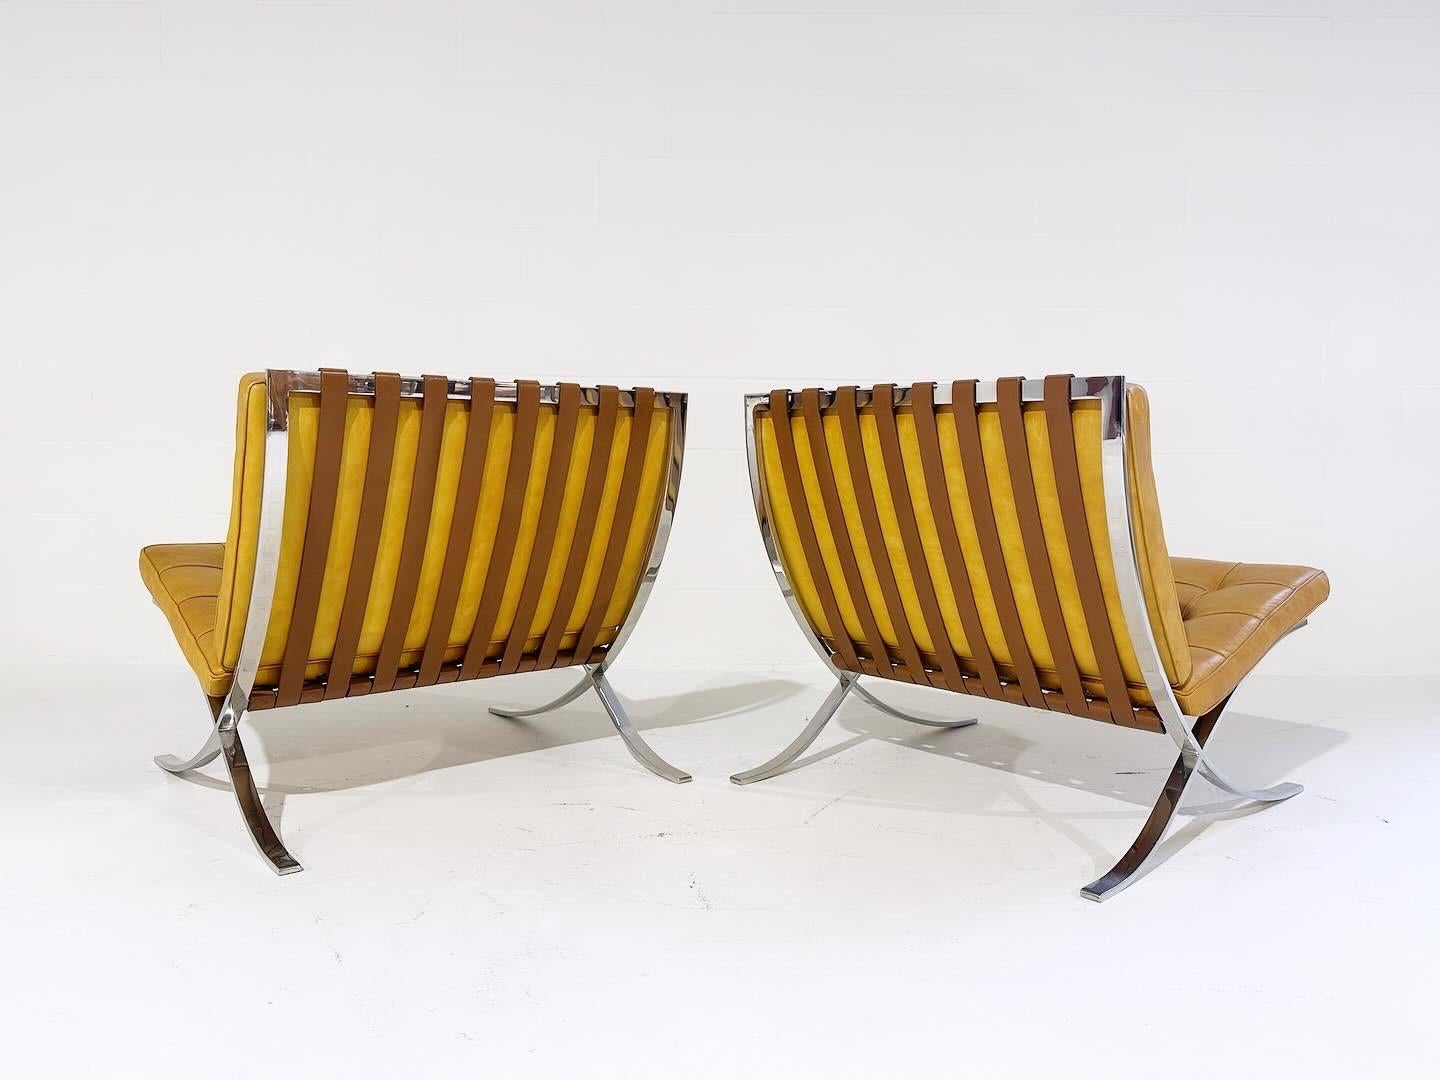 Ein Paar für Sammler. Dieses atemberaubende Paar Barcelona-Stühle mit Ottomanen wurde von Gerald R. Griffith unter der engen Aufsicht von Mies van der Rohe hergestellt. Die Griffith-Stühle haben äußerst präzise Ecken und weniger Verstärkungen am